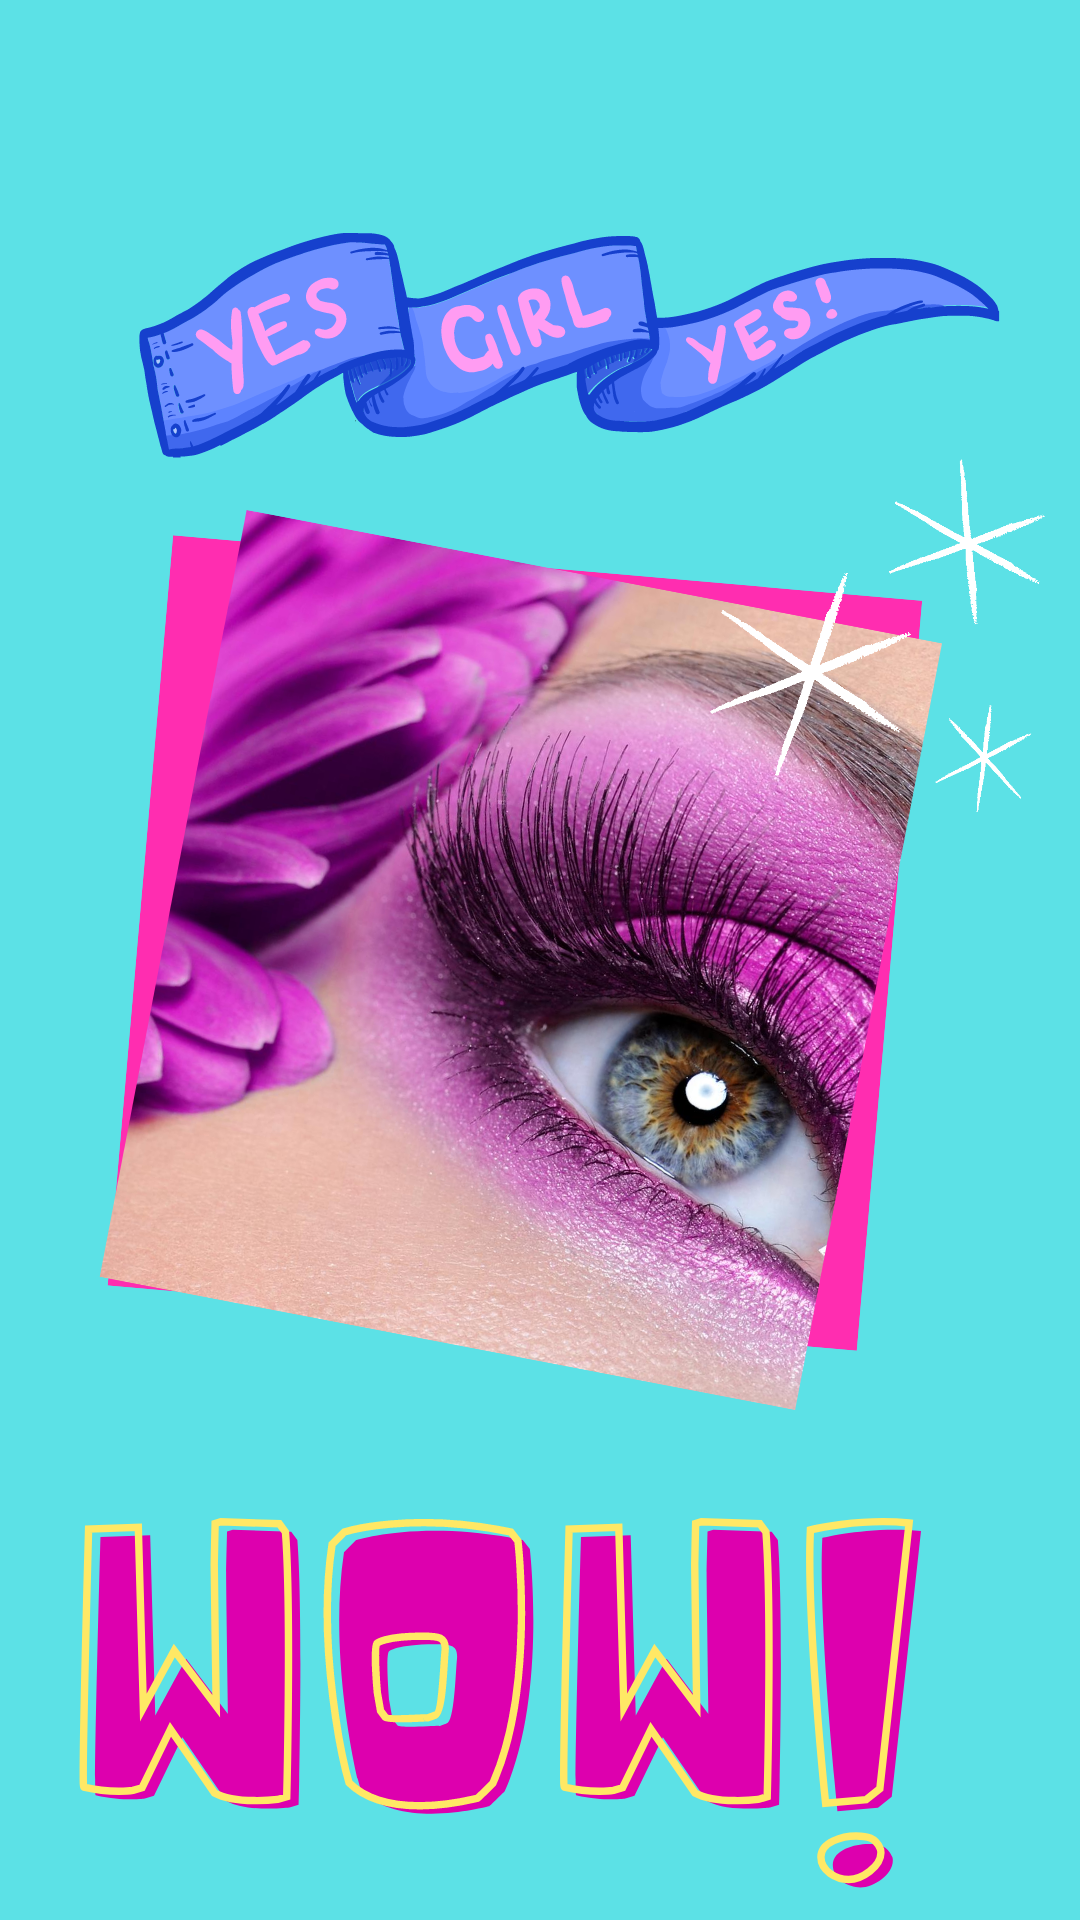 <img src="ana.jpg" alt="ana wow girl instagram story graphic with purple eyeshadow"/> 